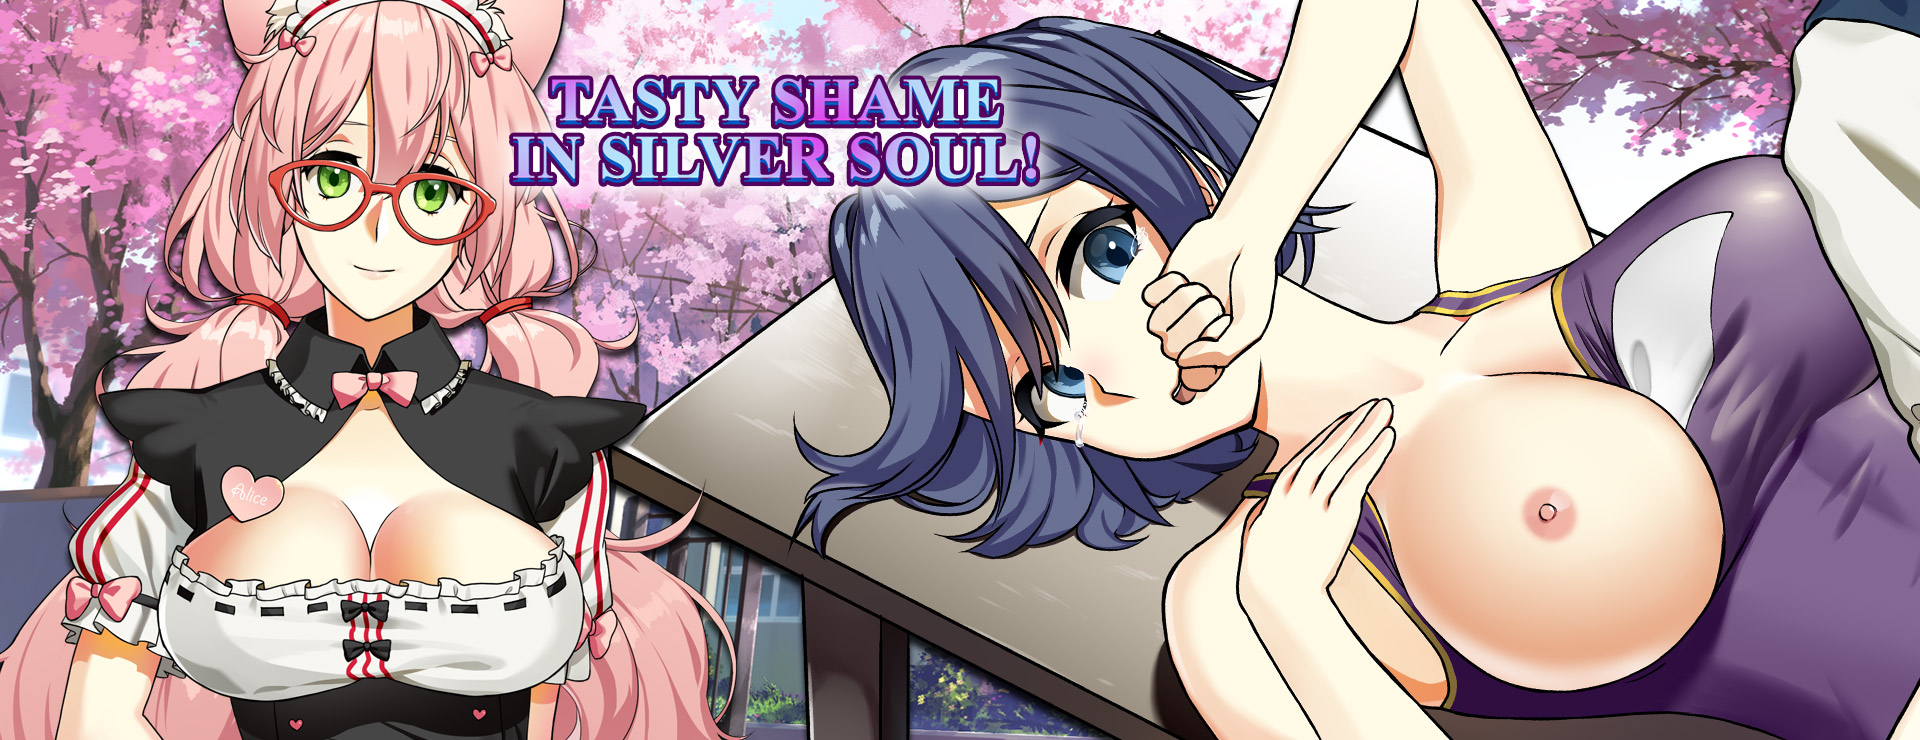 Tasty Shame in Silver Soul - Powieść wizualna Gra